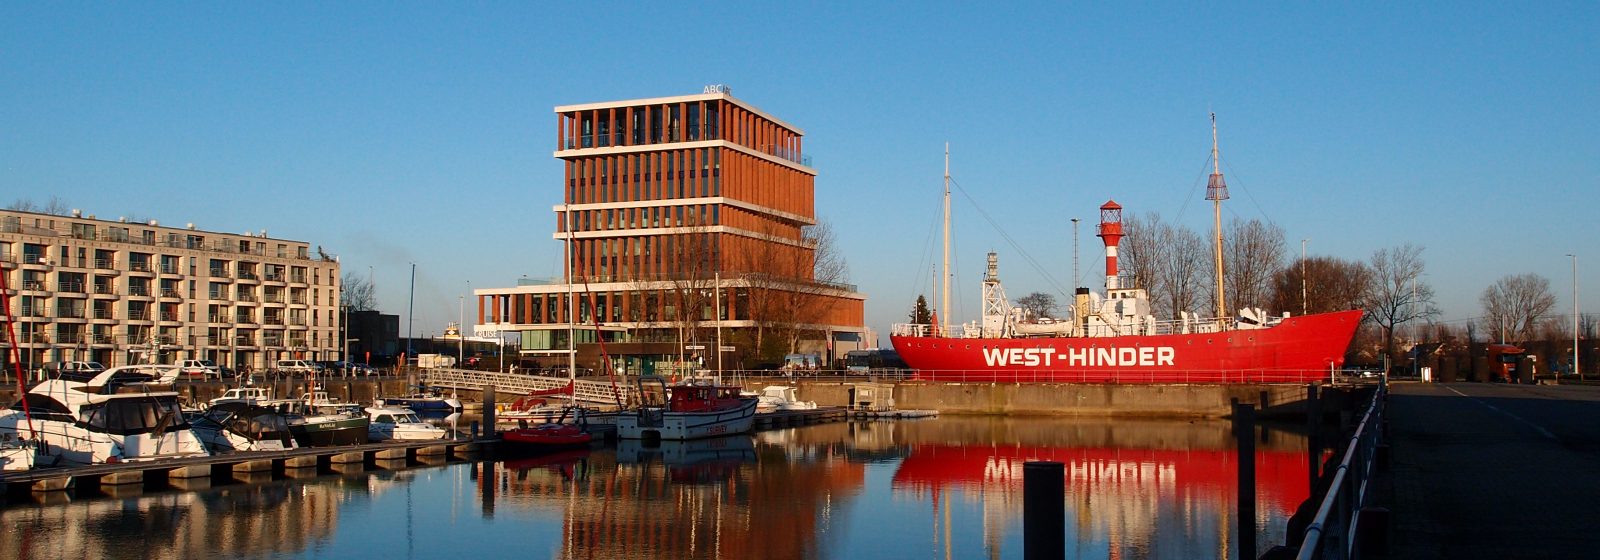 ABC-toren (cruiseterminal) met 'Westhinder II' in Zeebrugge